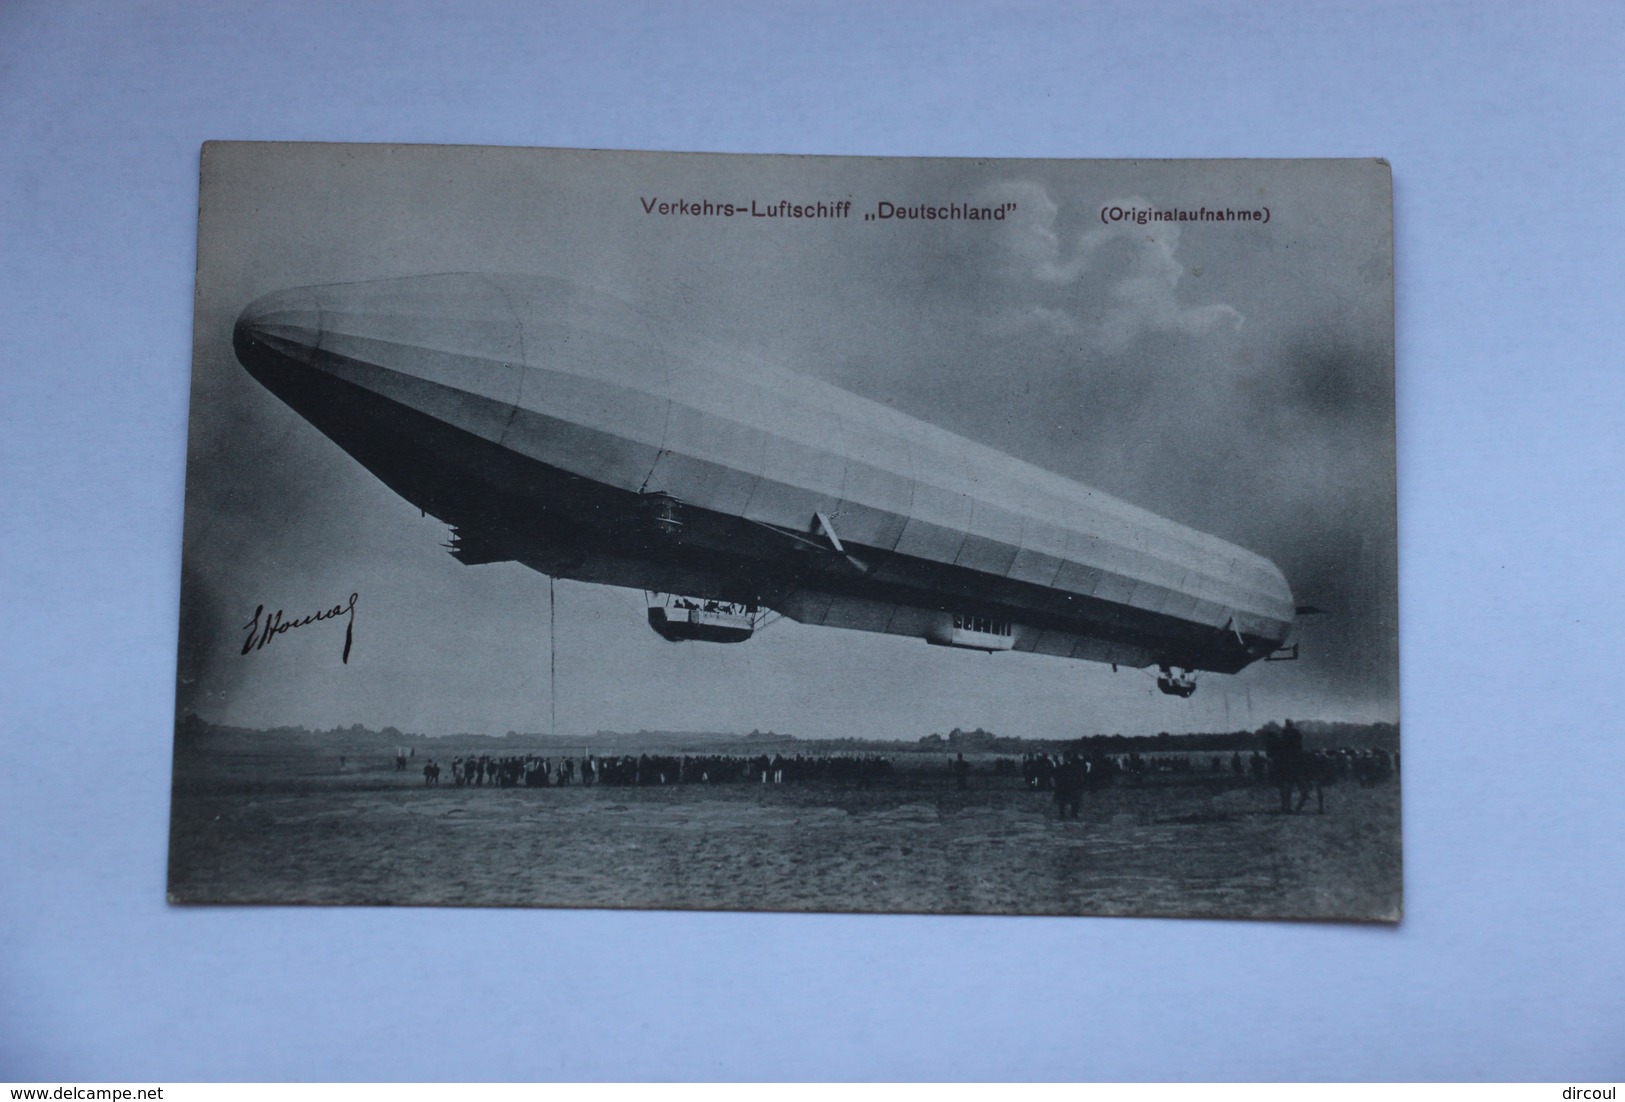 39398  -  Zeppelin  -  Verkehrs-Luftschiff   Deutschland   -originalaufnahme  -  2 - Luchtschepen